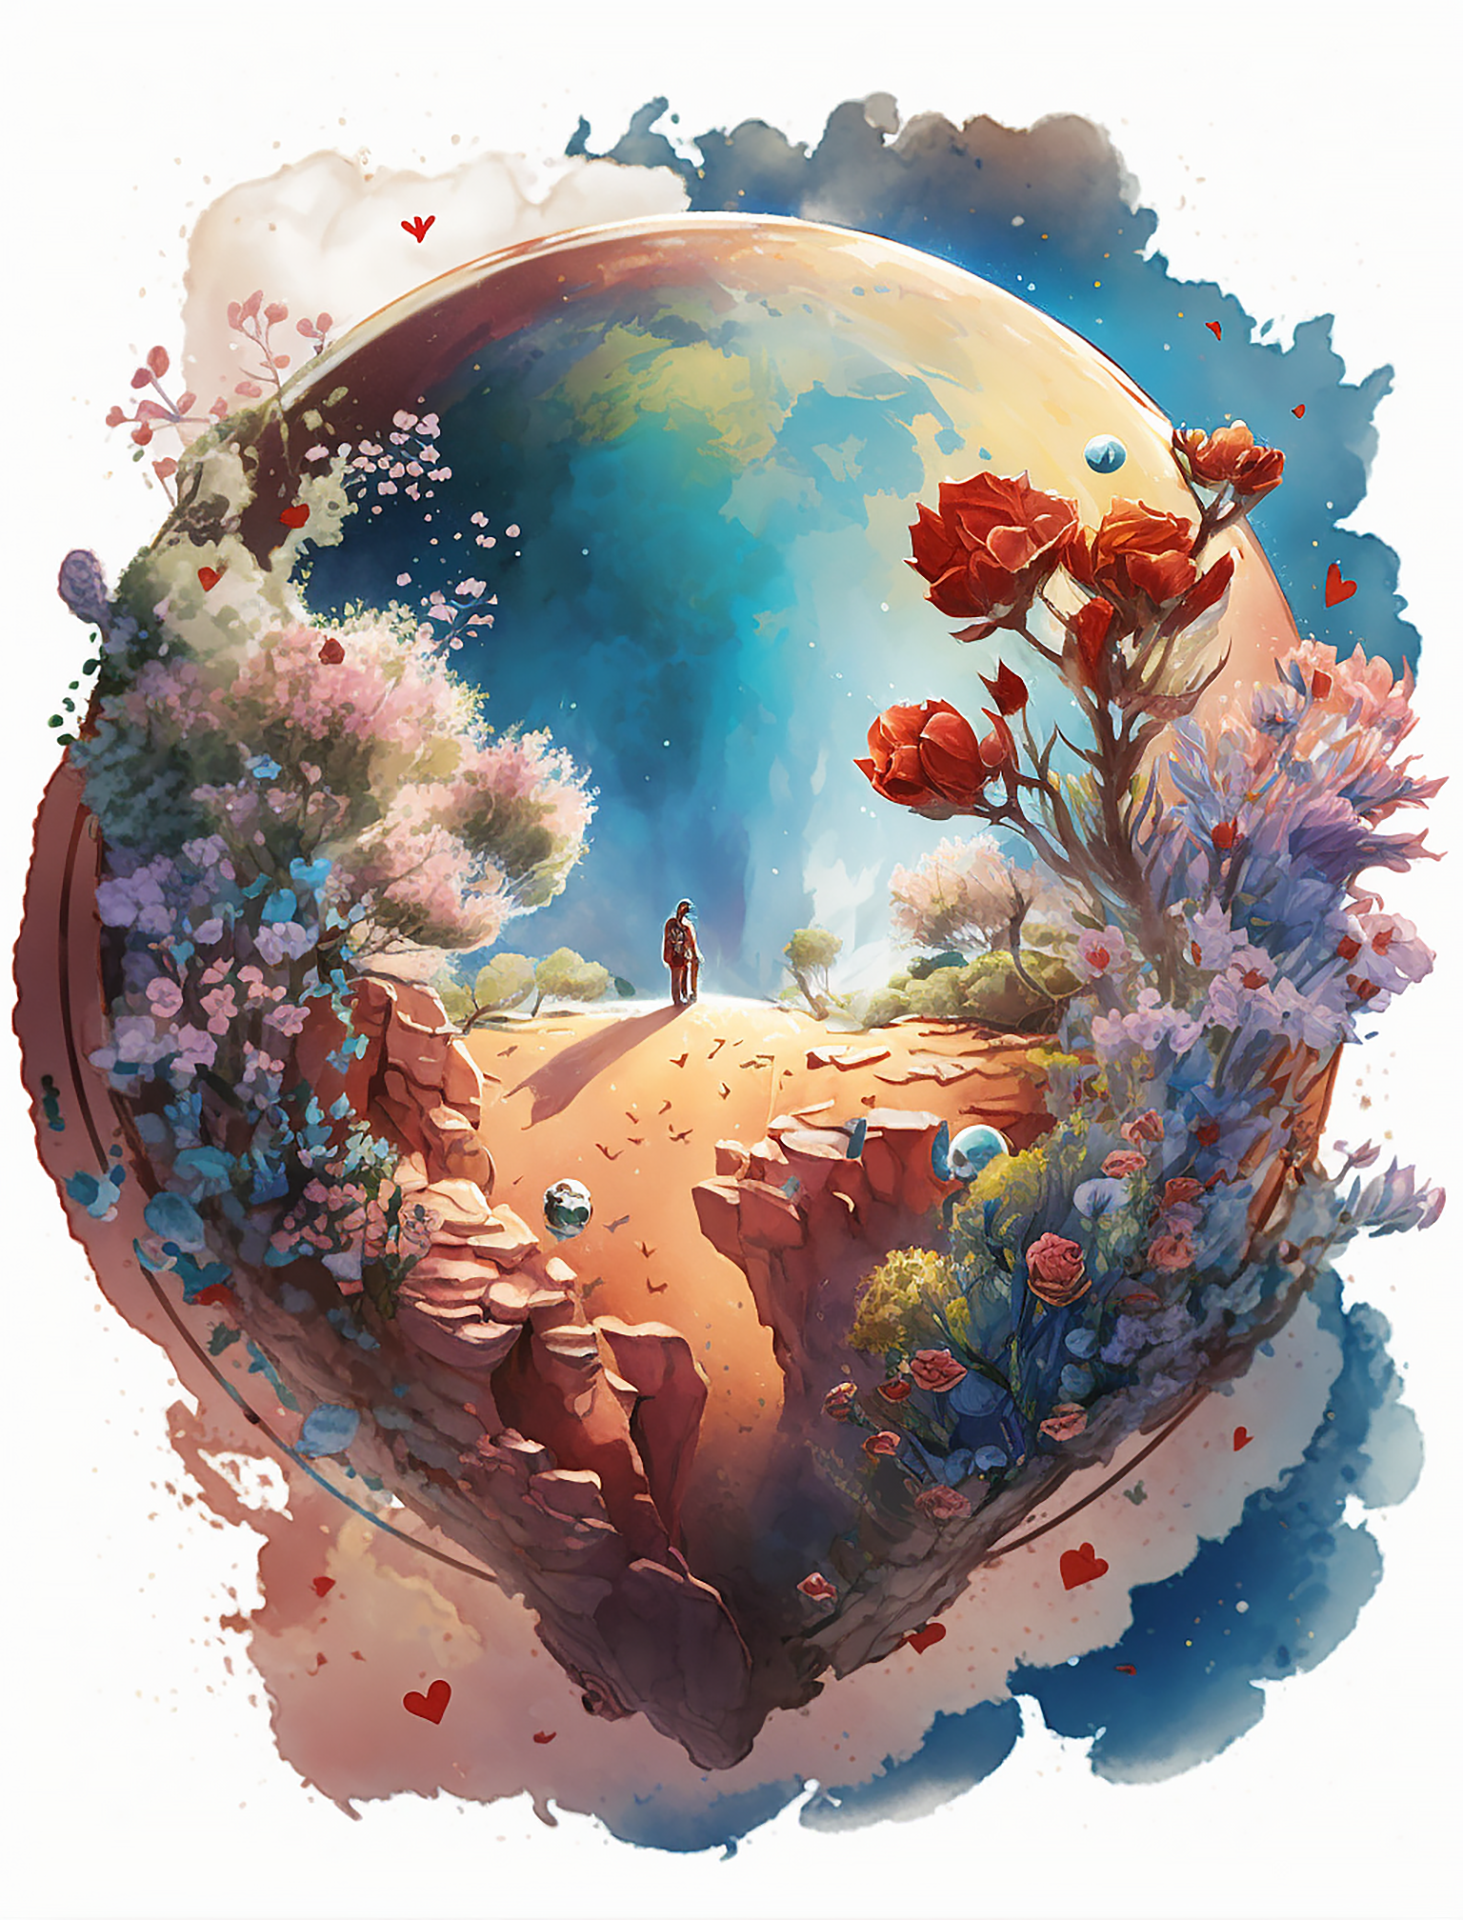 浪漫梦幻卡通玫瑰花卉星球油画装饰画背景图片